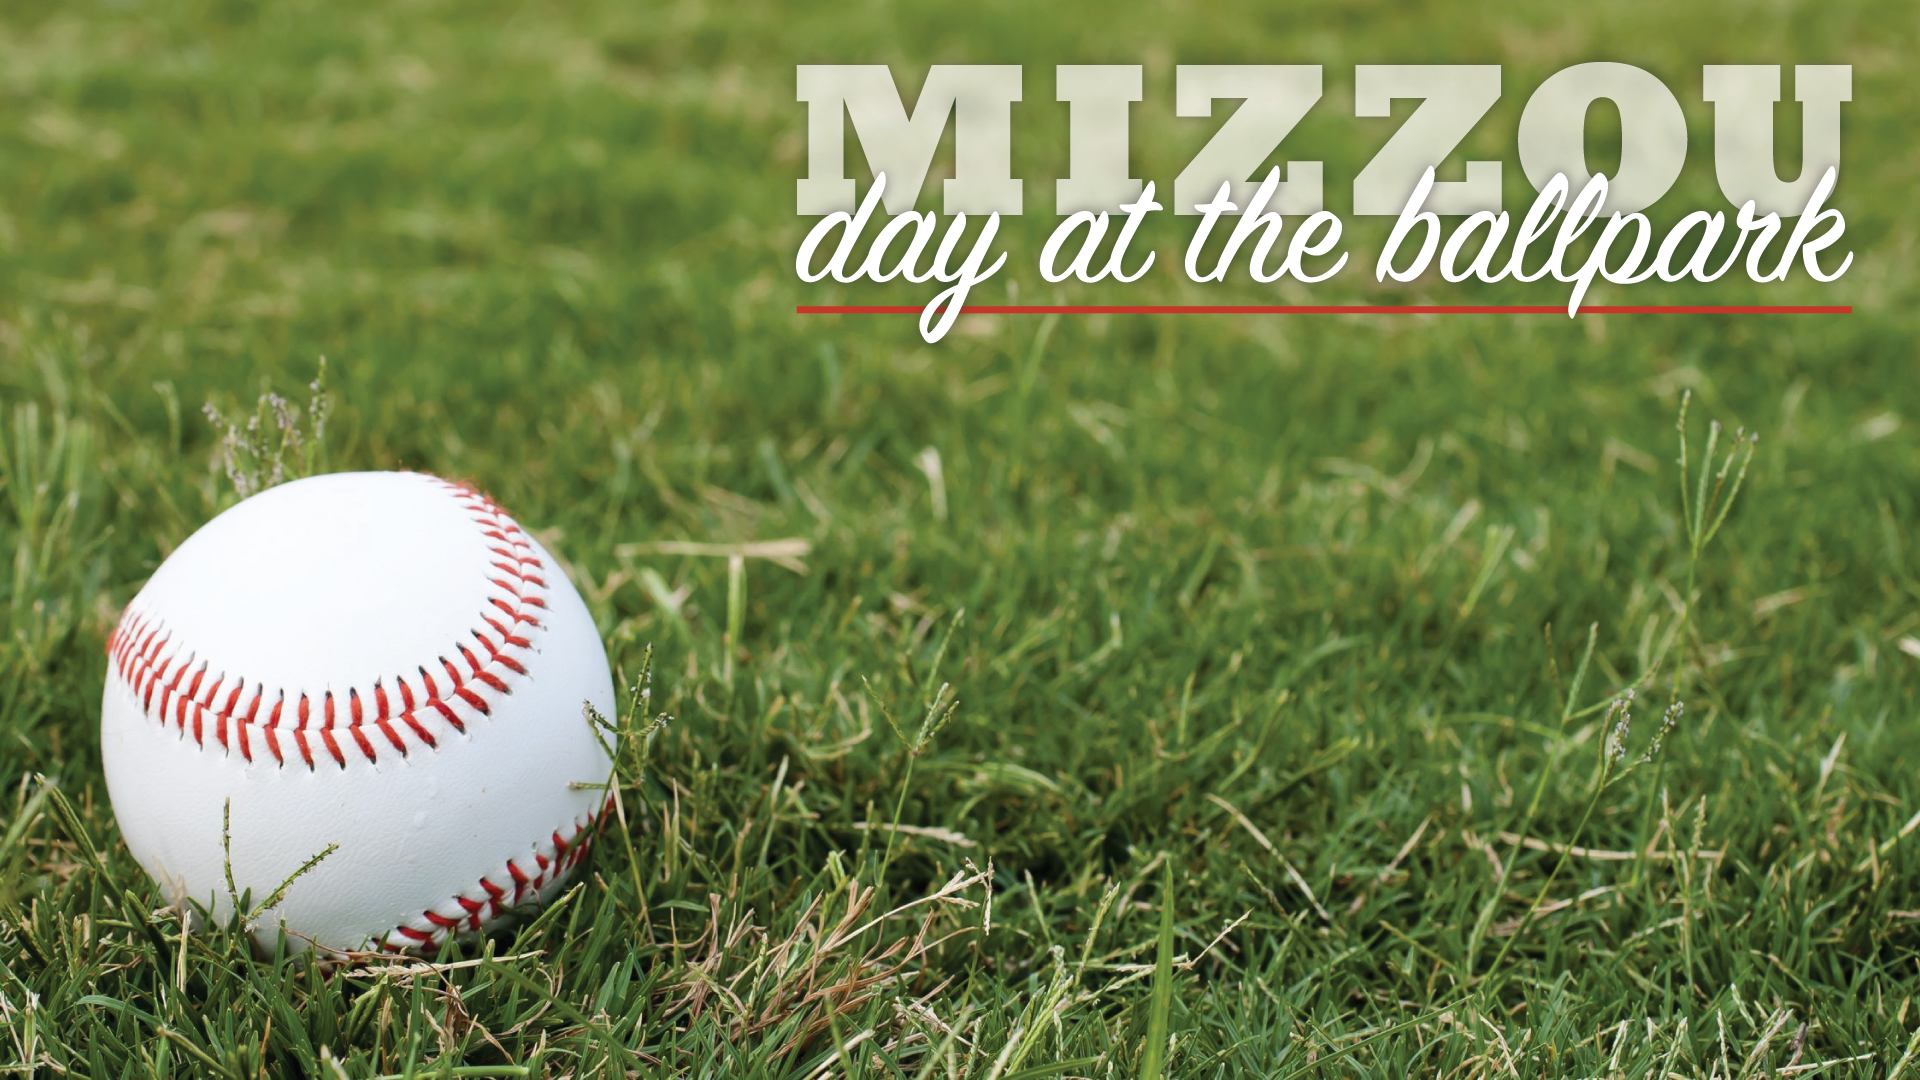 Mizzou Day at the Ballpark